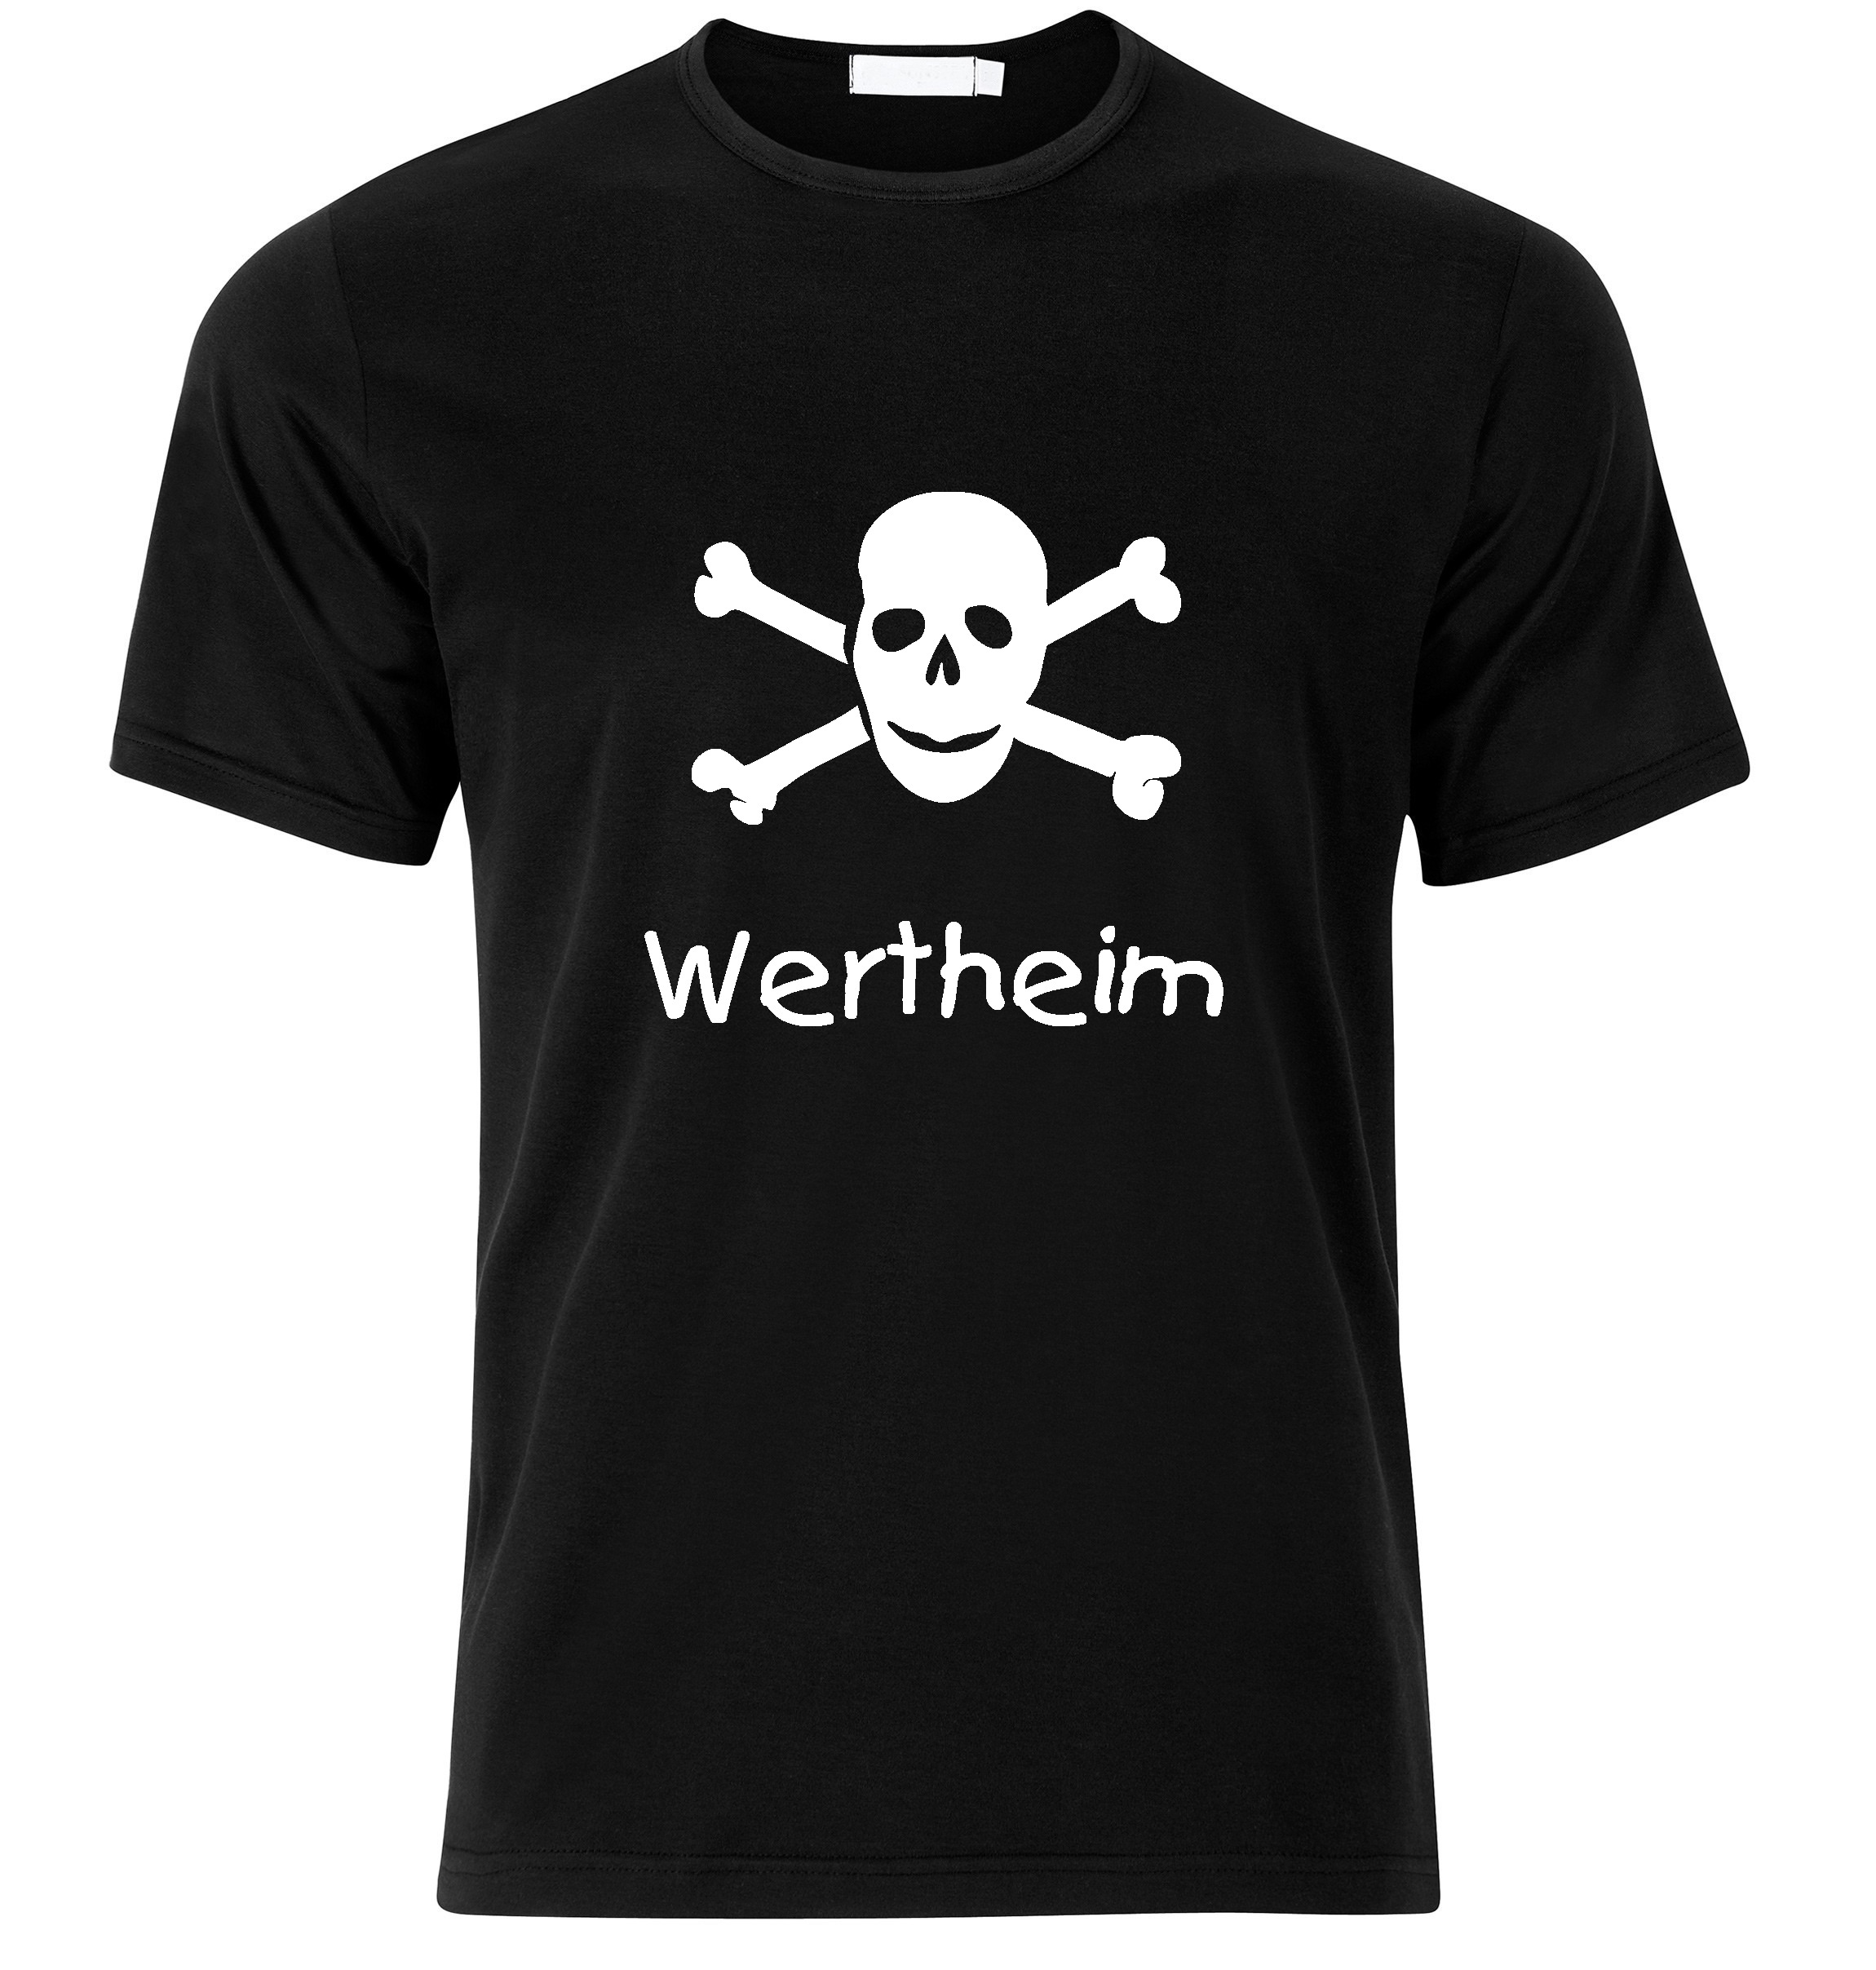 T-Shirt Wertheim Jolly Roger, Totenkopf